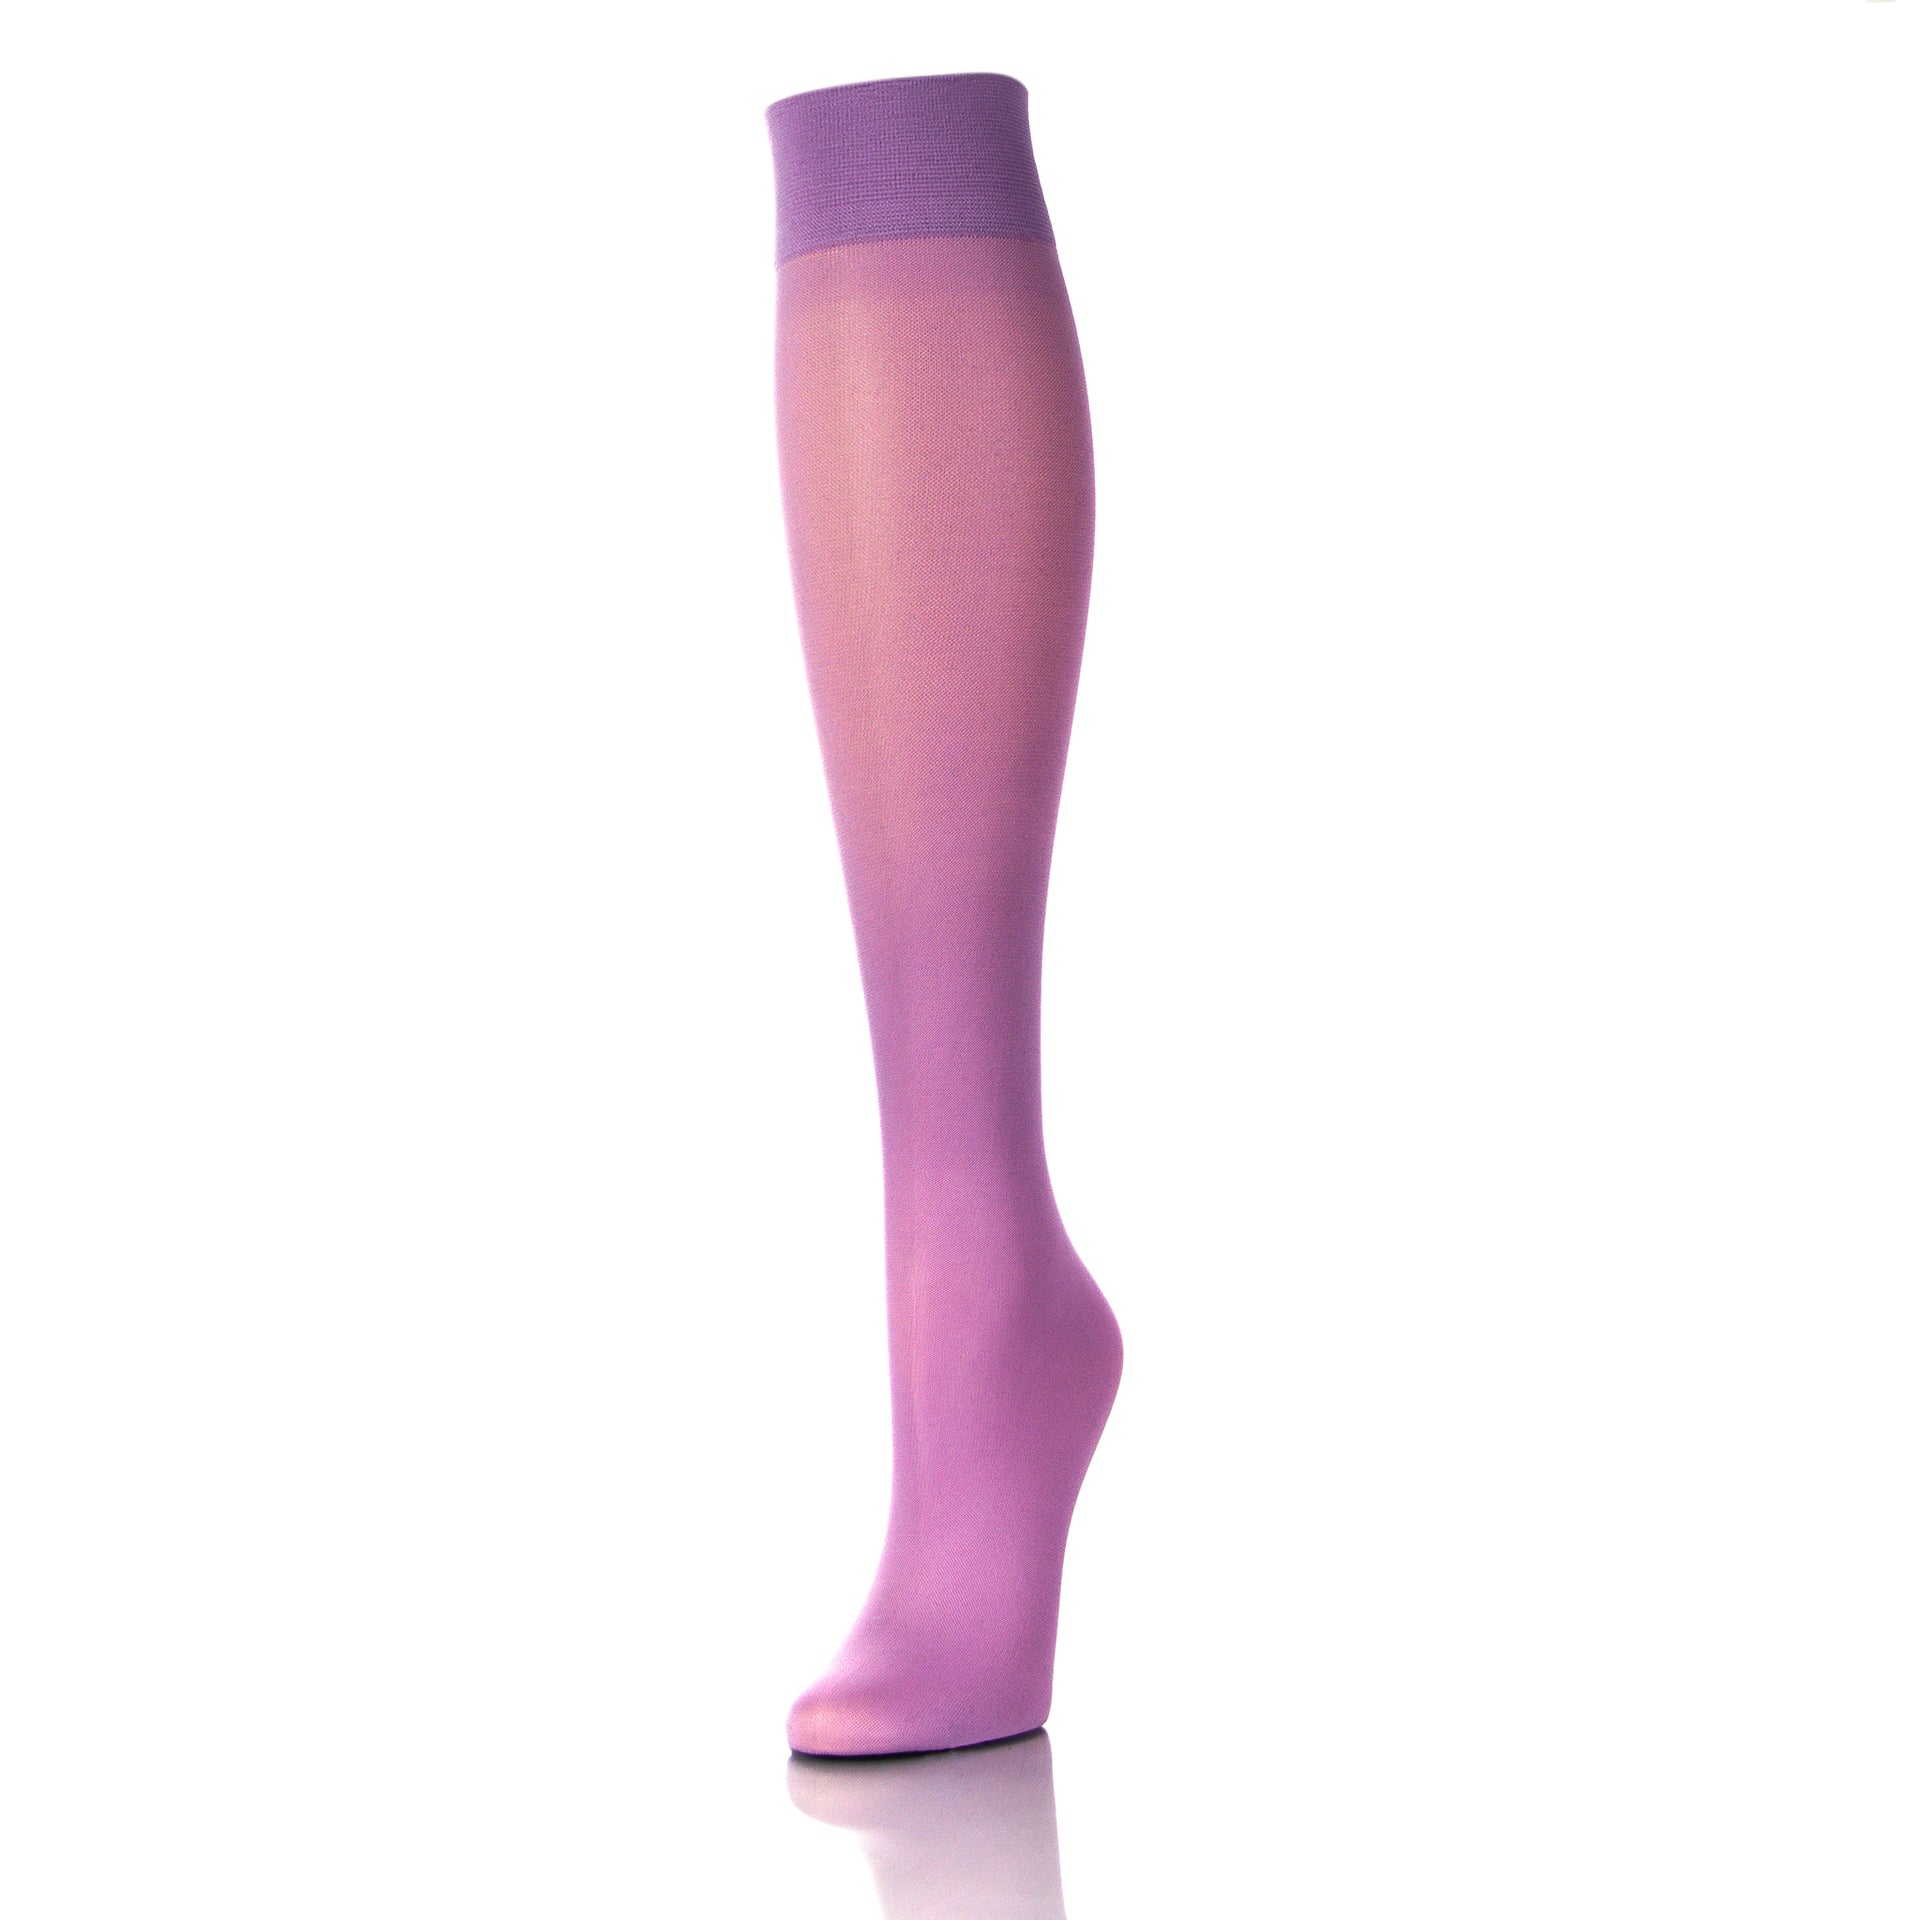 Jolis bas de compression couleur lavande pour femme 20-30 mmHg, vue de l'extérieur de la jambe - Softmedi